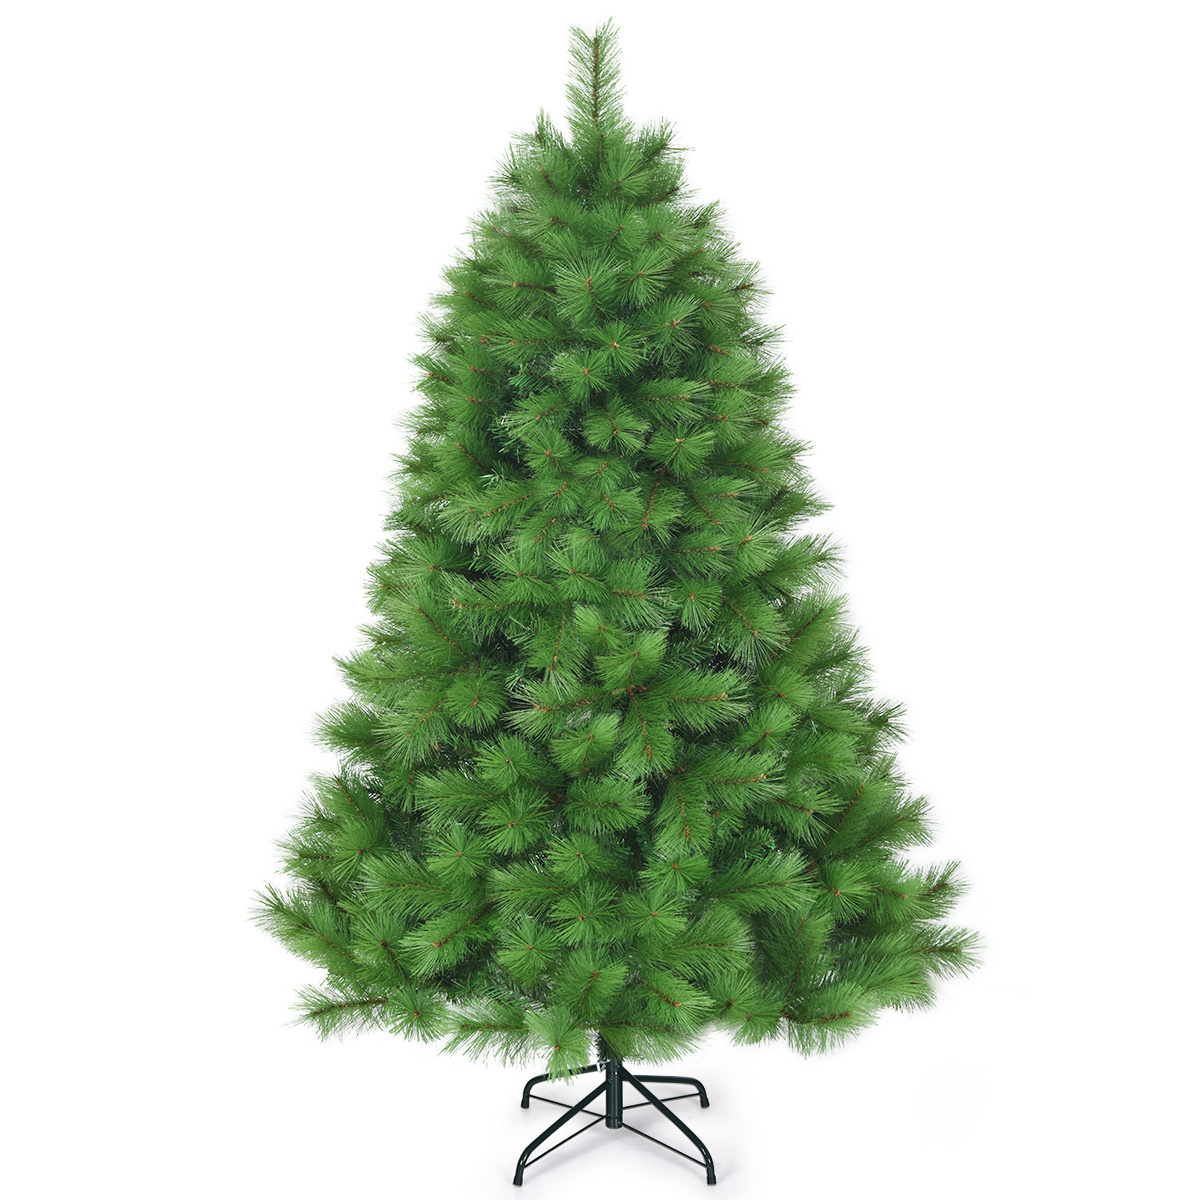 Nadeln günstig Kaufen-Coast 180 cm künstlicher Weihnachtsbaum Weihnachtsbaum pvc Nadeln künstlicher Baum mit Metallständer grün. Coast 180 cm künstlicher Weihnachtsbaum Weihnachtsbaum pvc Nadeln künstlicher Baum mit Metallständer grün <!